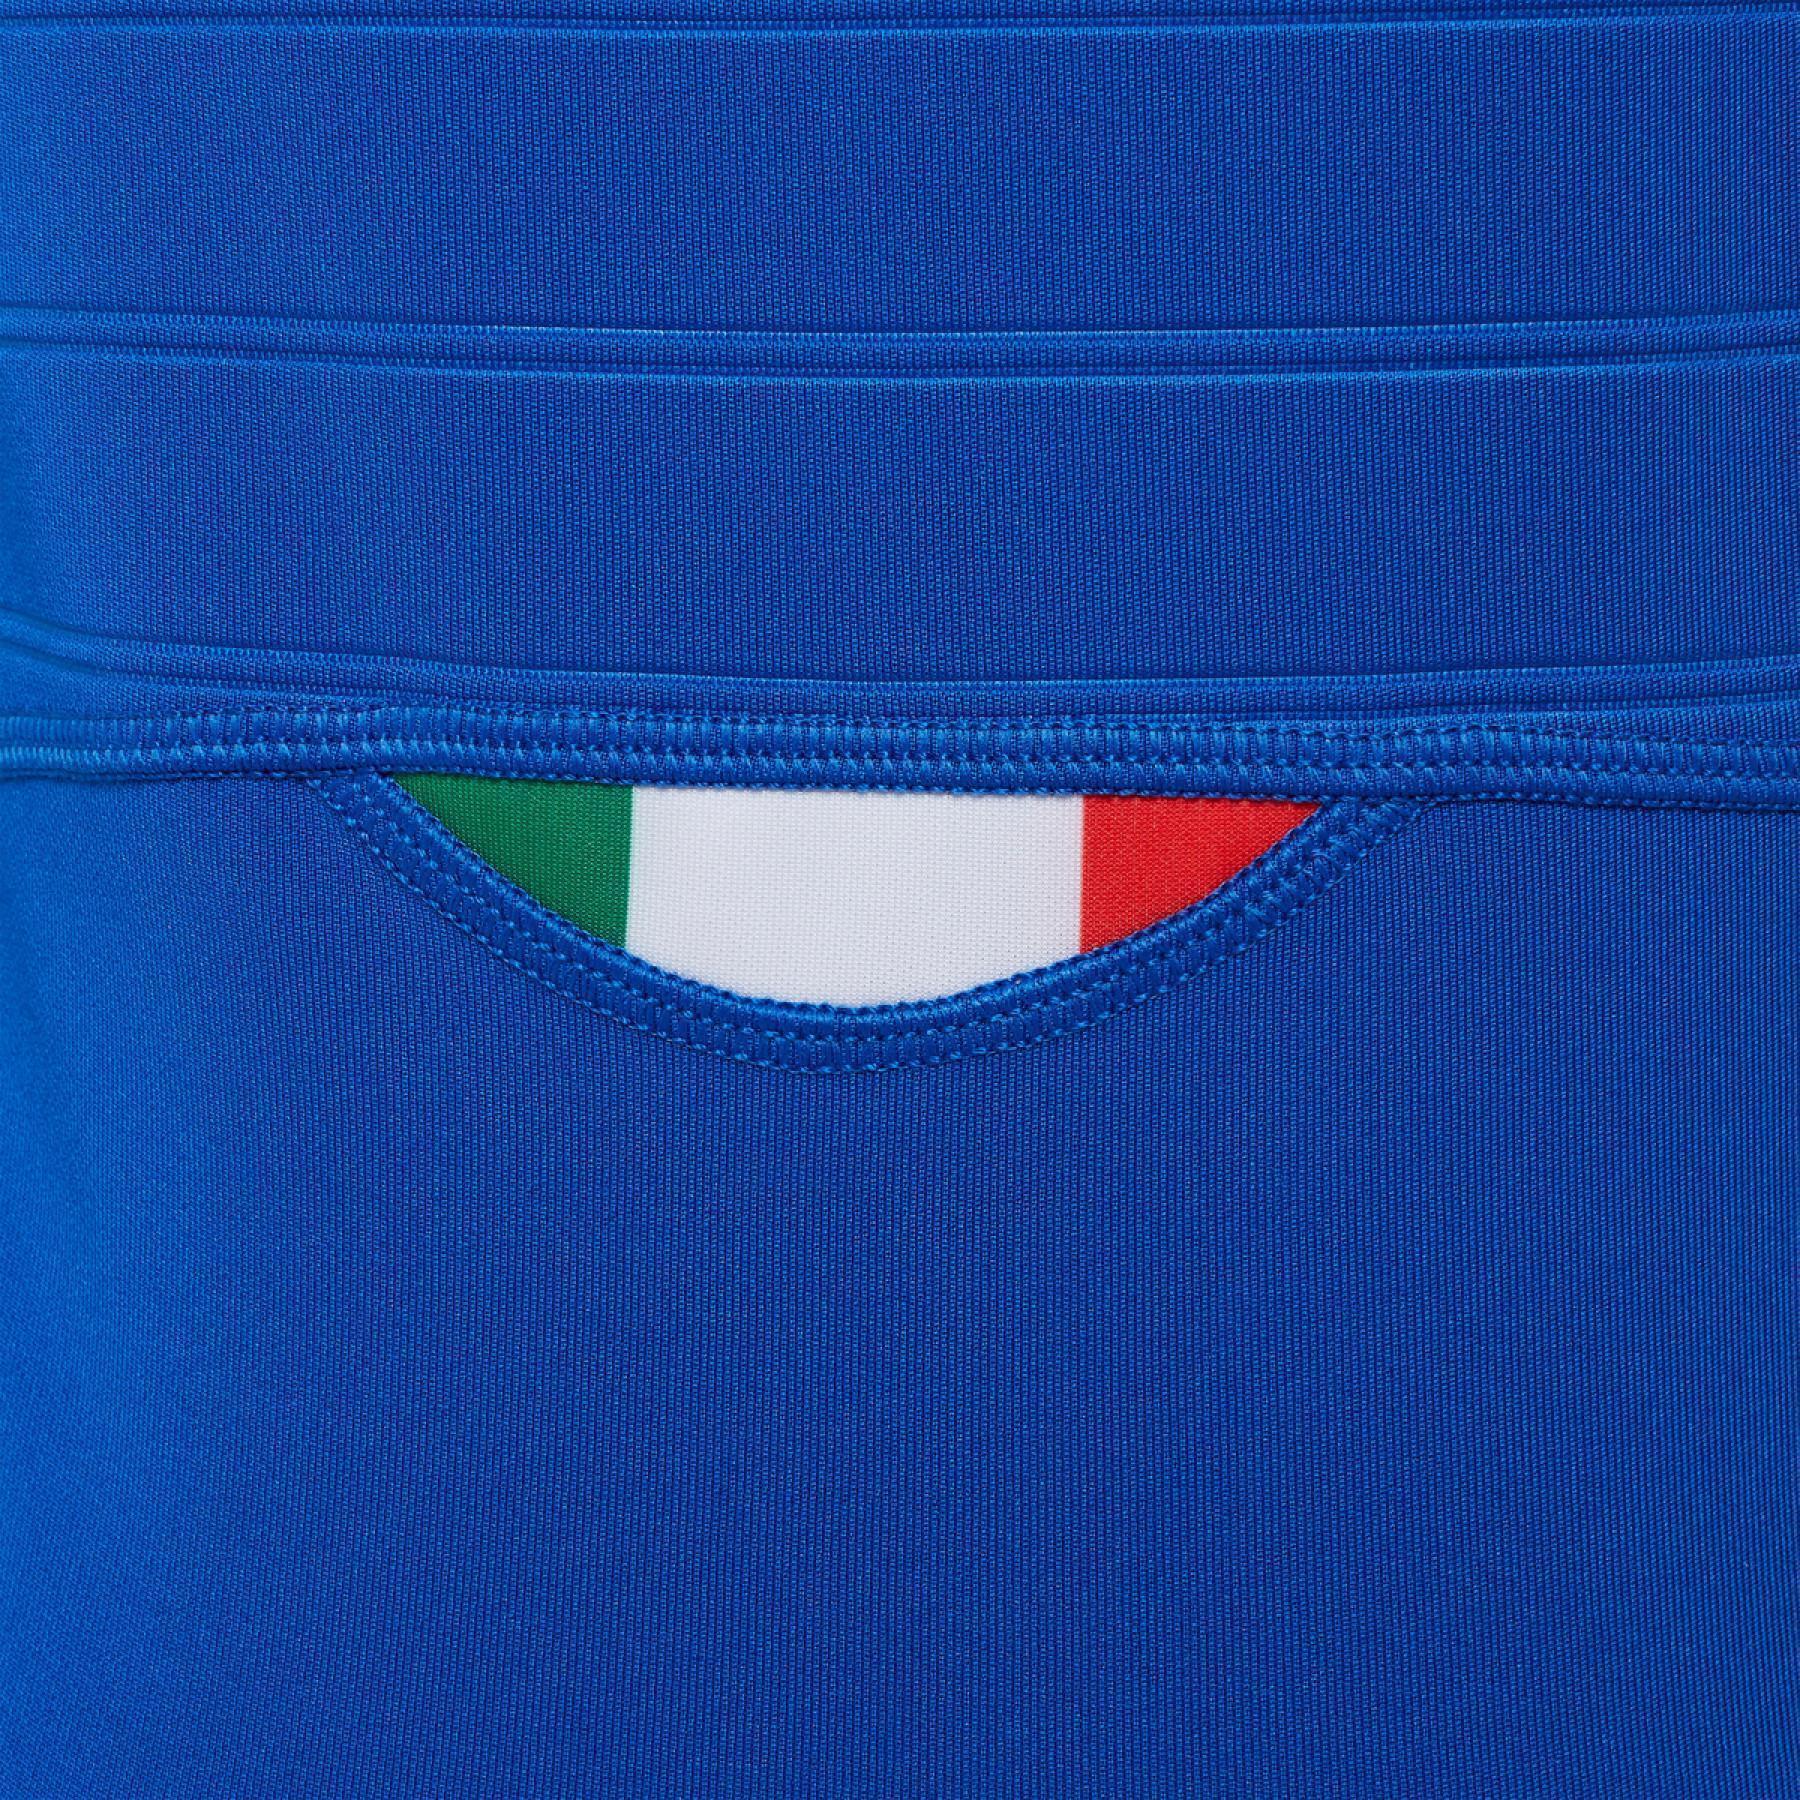 Hemmasittande tröja för barn italie rugby 2020/21